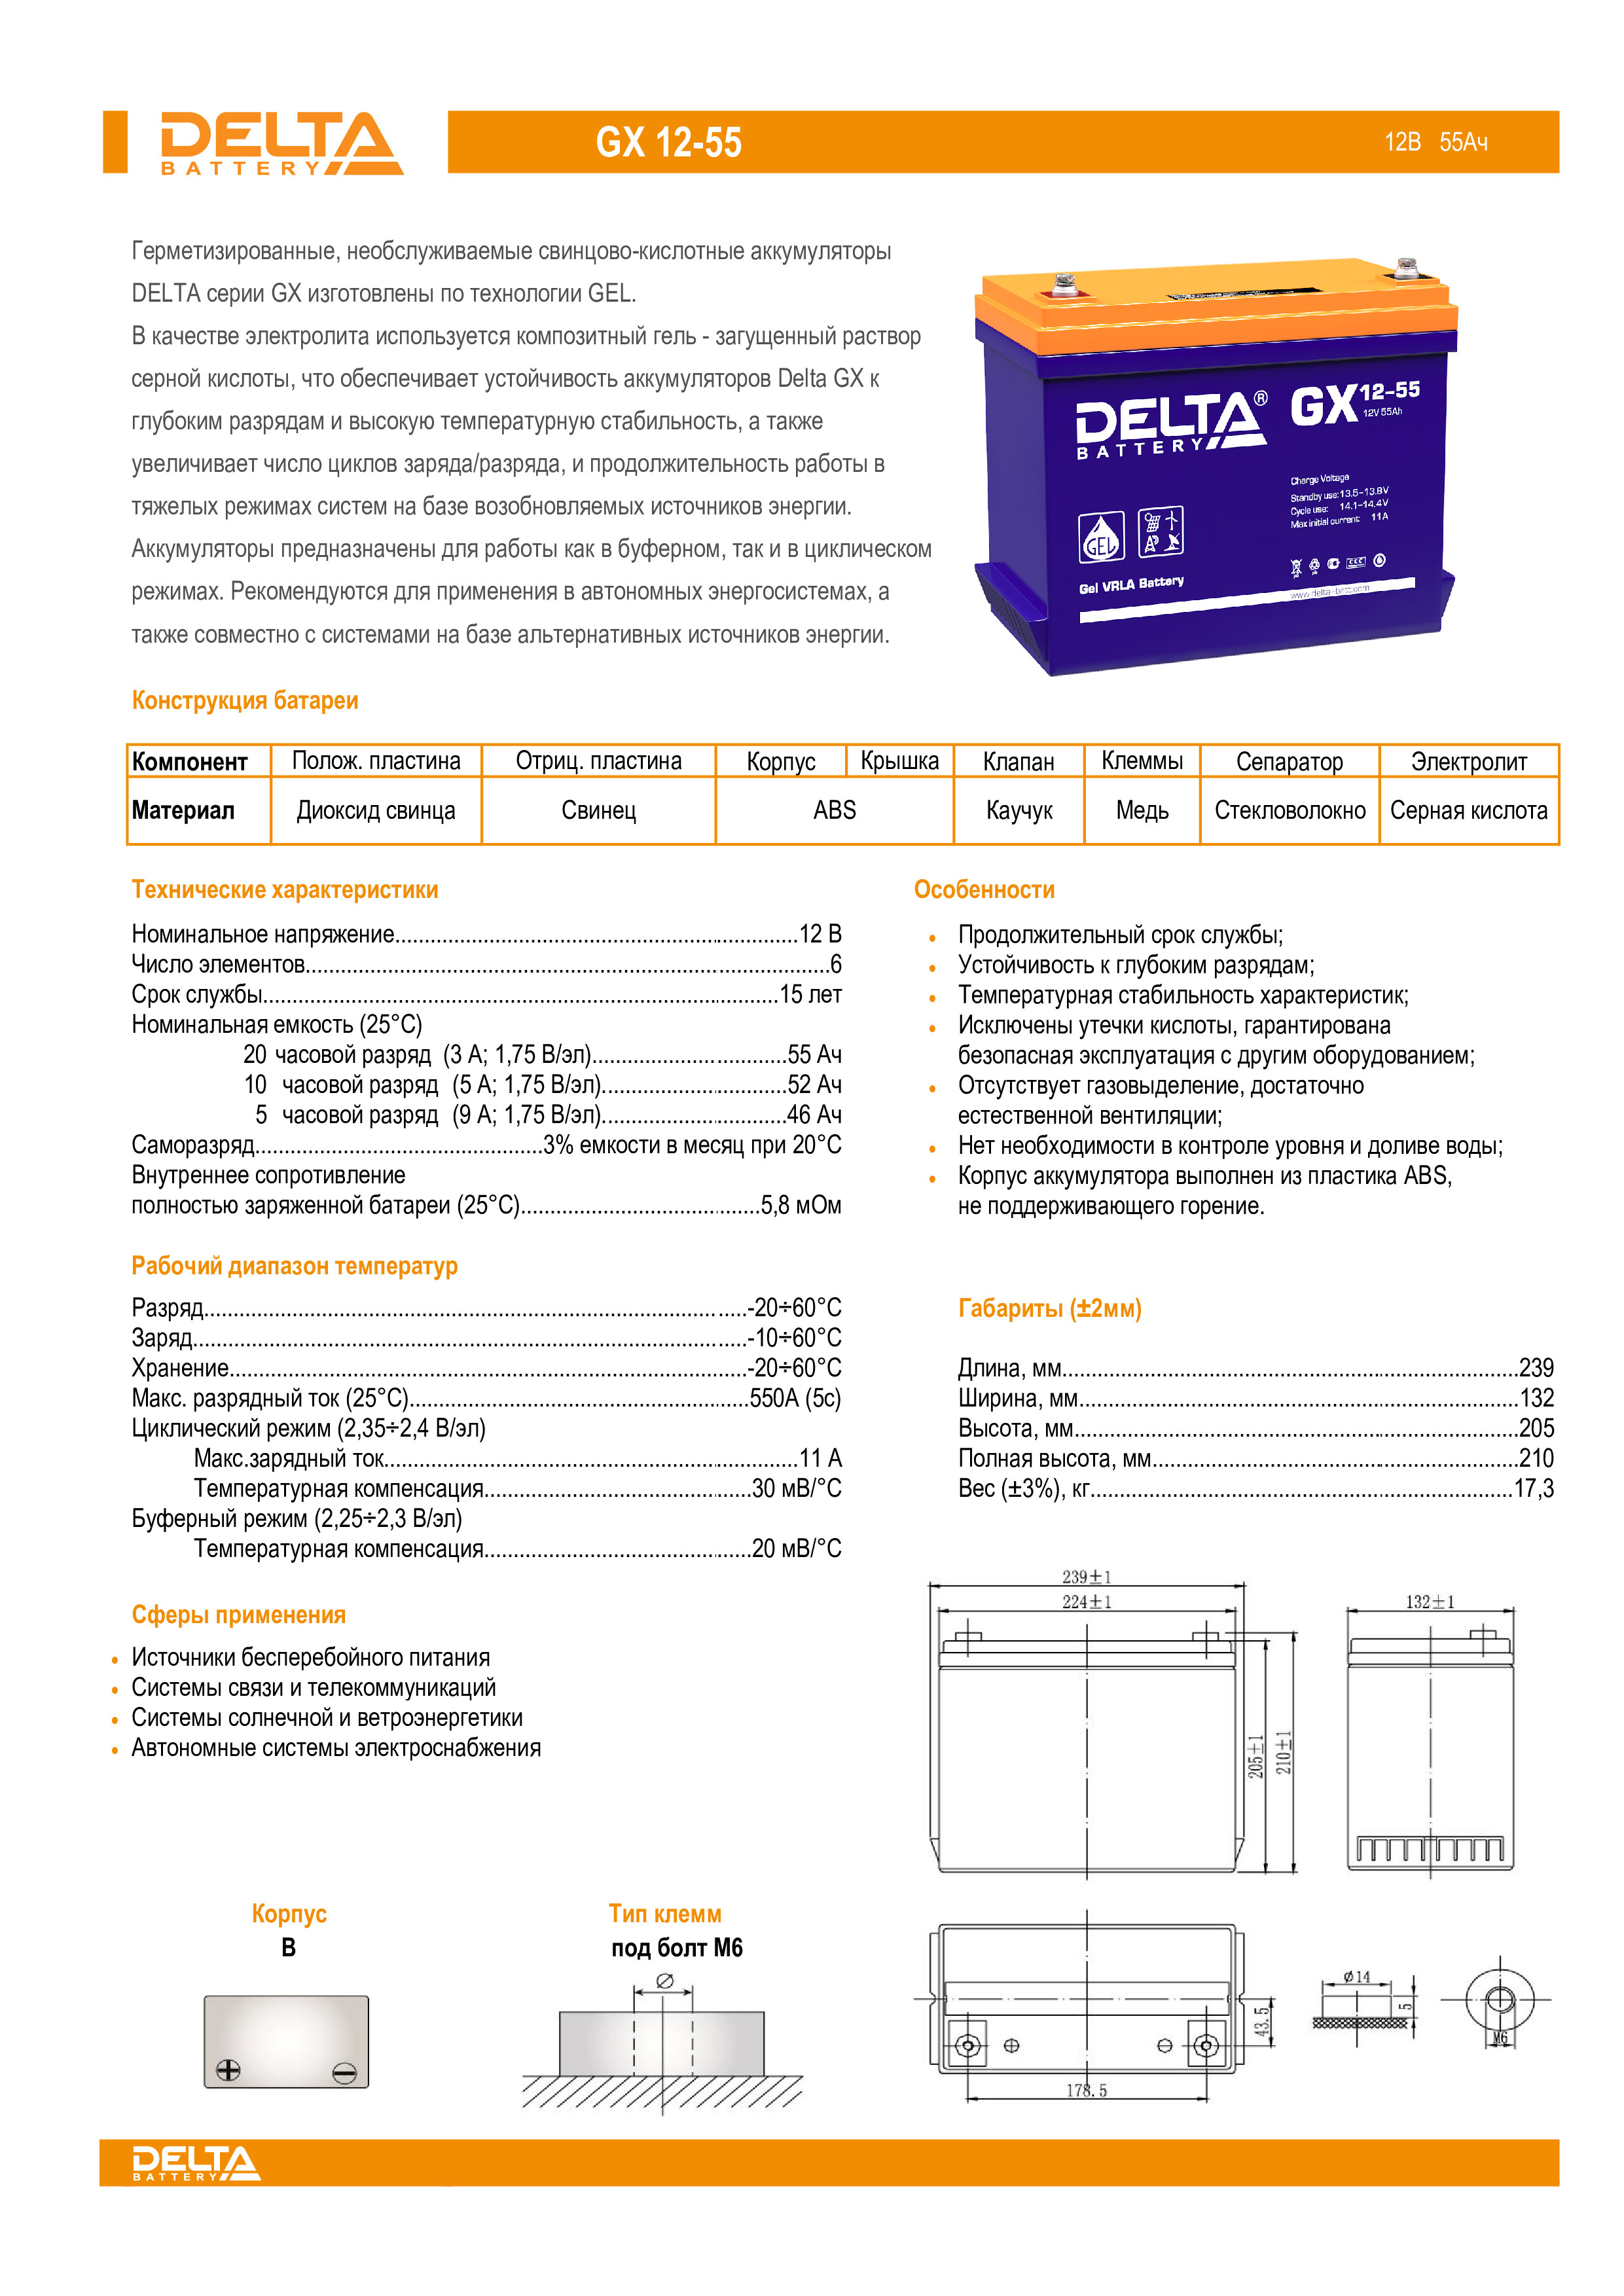 Характеристика batteries. Аккумуляторная батарея Delta HRL 12-100 X. Delta GX 12-100. Аккумулятор Delta Gel 12-100. Гелевый аккумулятор Delta GX 12-100.